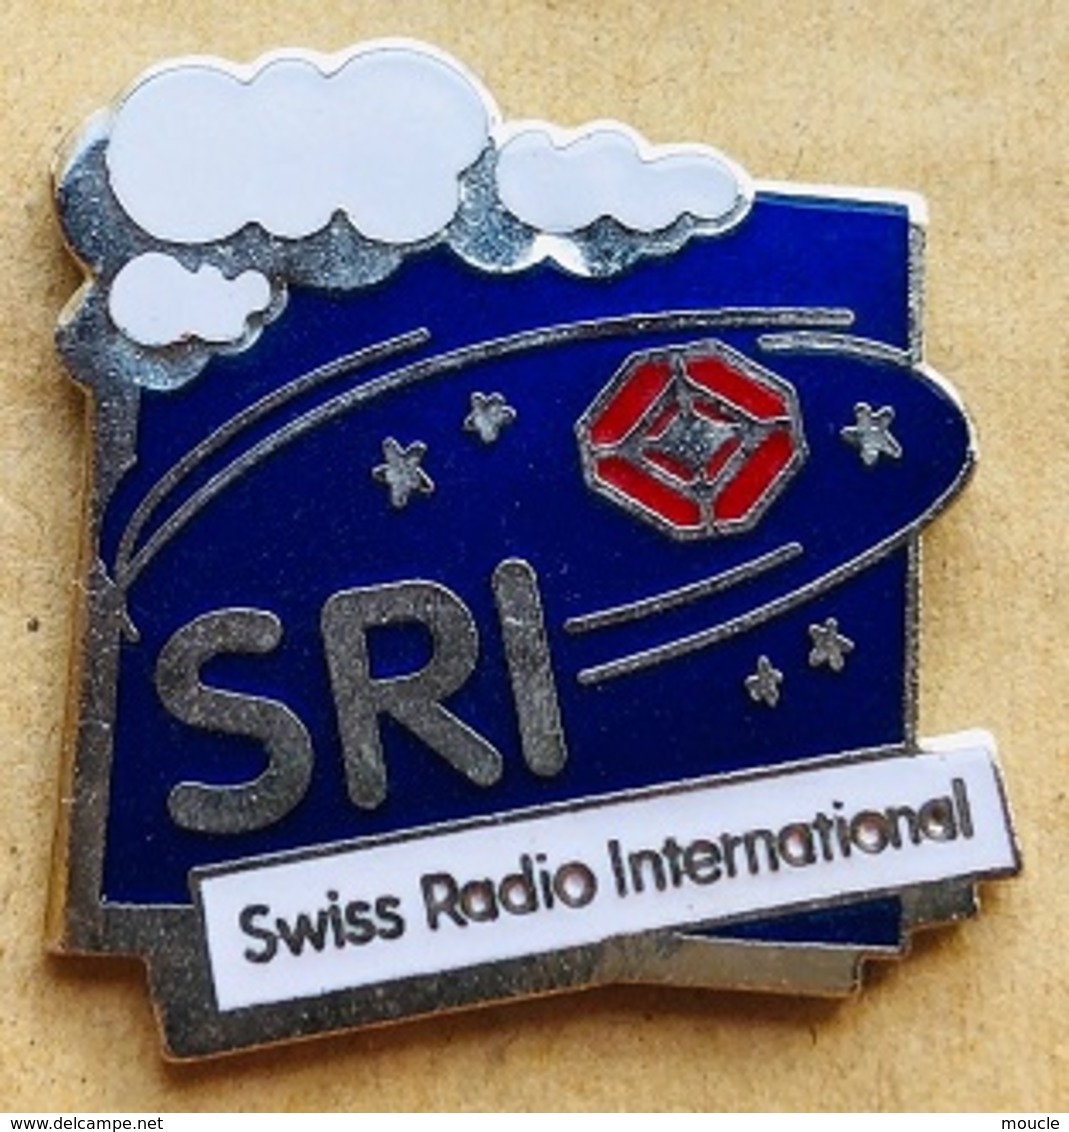 SRI - SWISS RADIO INTERNATIONAL - LOGO - NUAGE - CLOUD - ETOILES - STARS - RADIO SUISSE INTERNATIONALE   - (23) - Mass Media